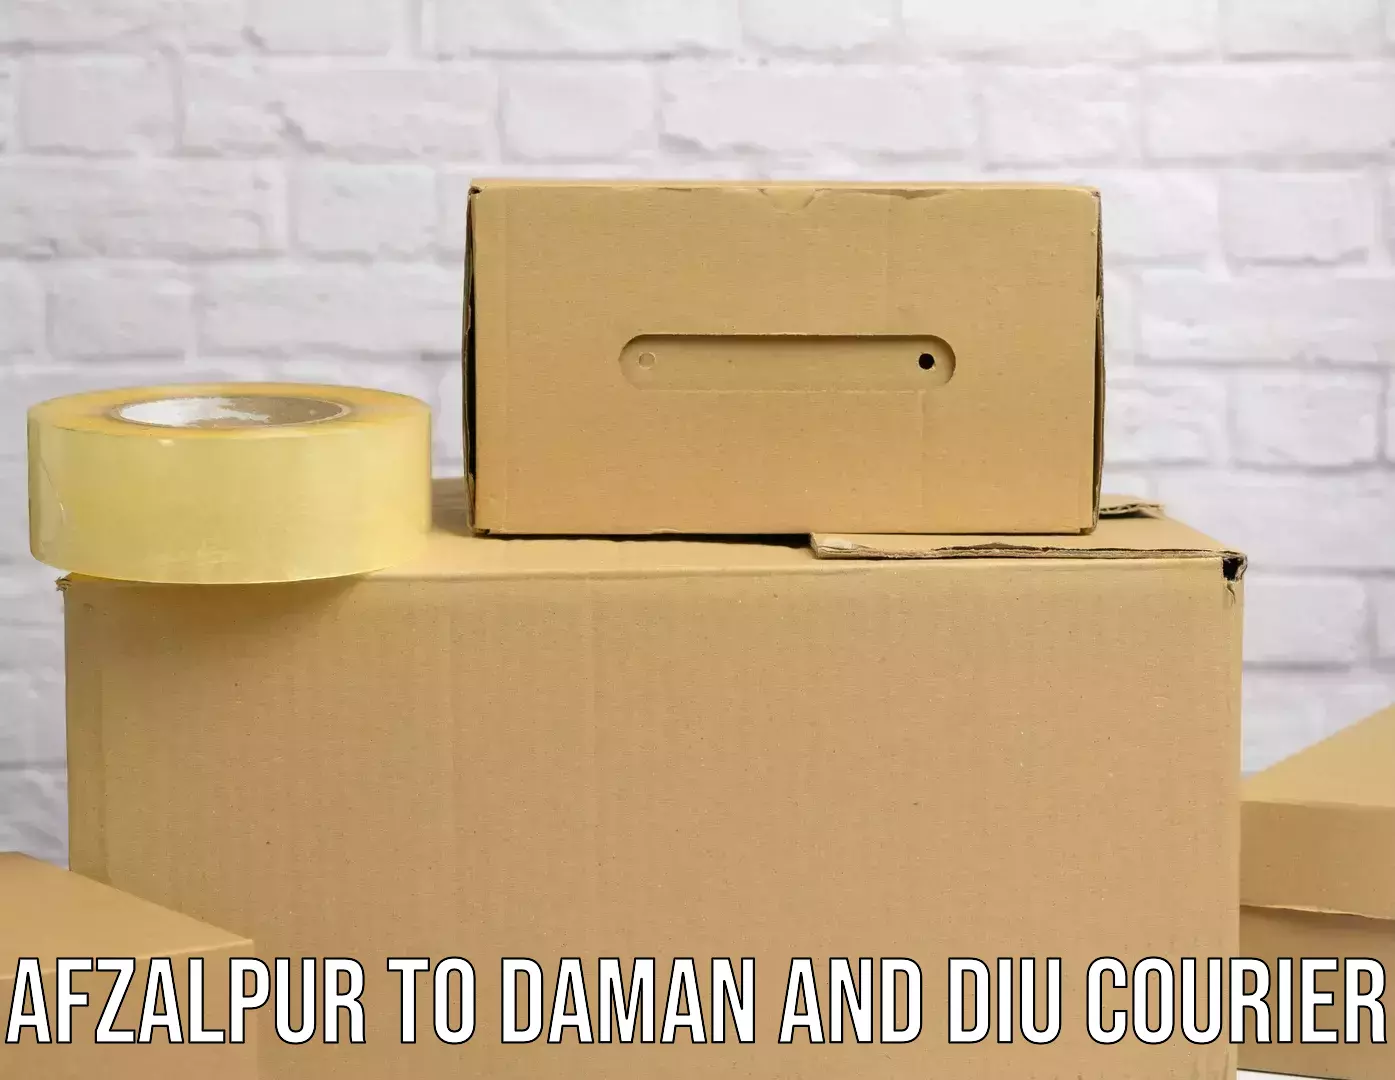 High-capacity shipping options Afzalpur to Daman and Diu